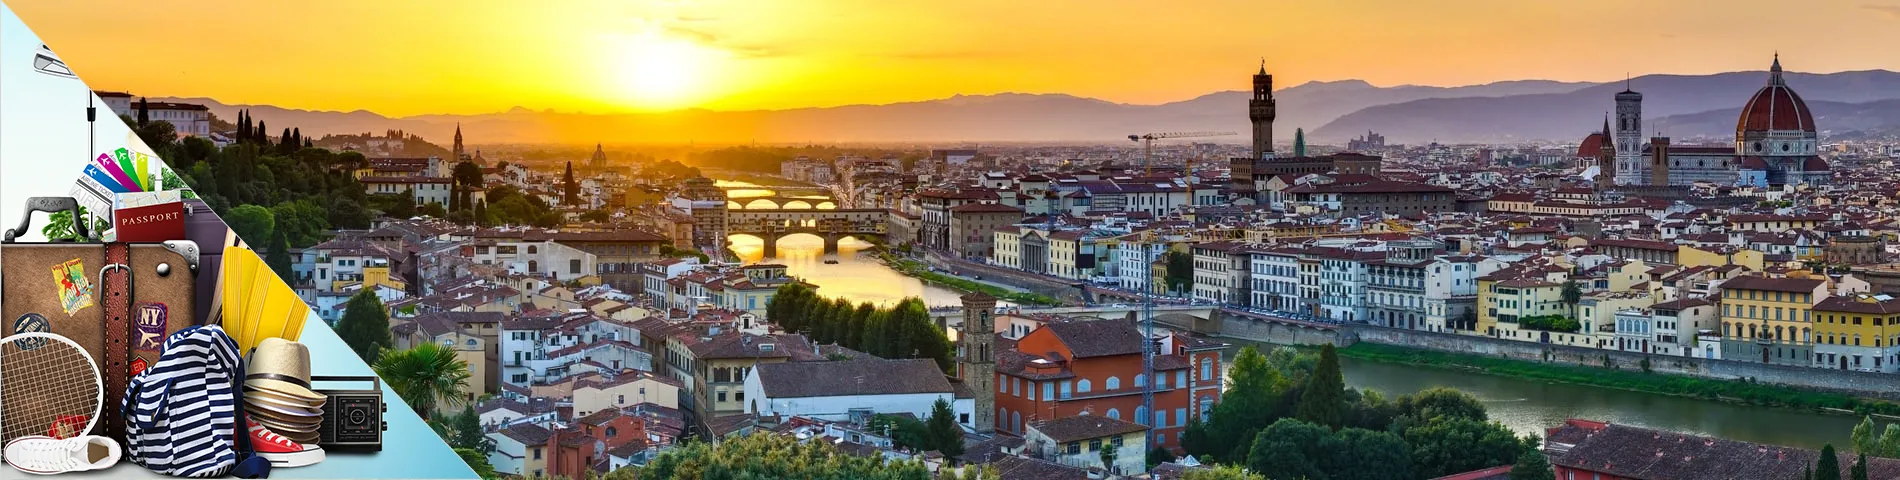 Florens - Italienska för turism